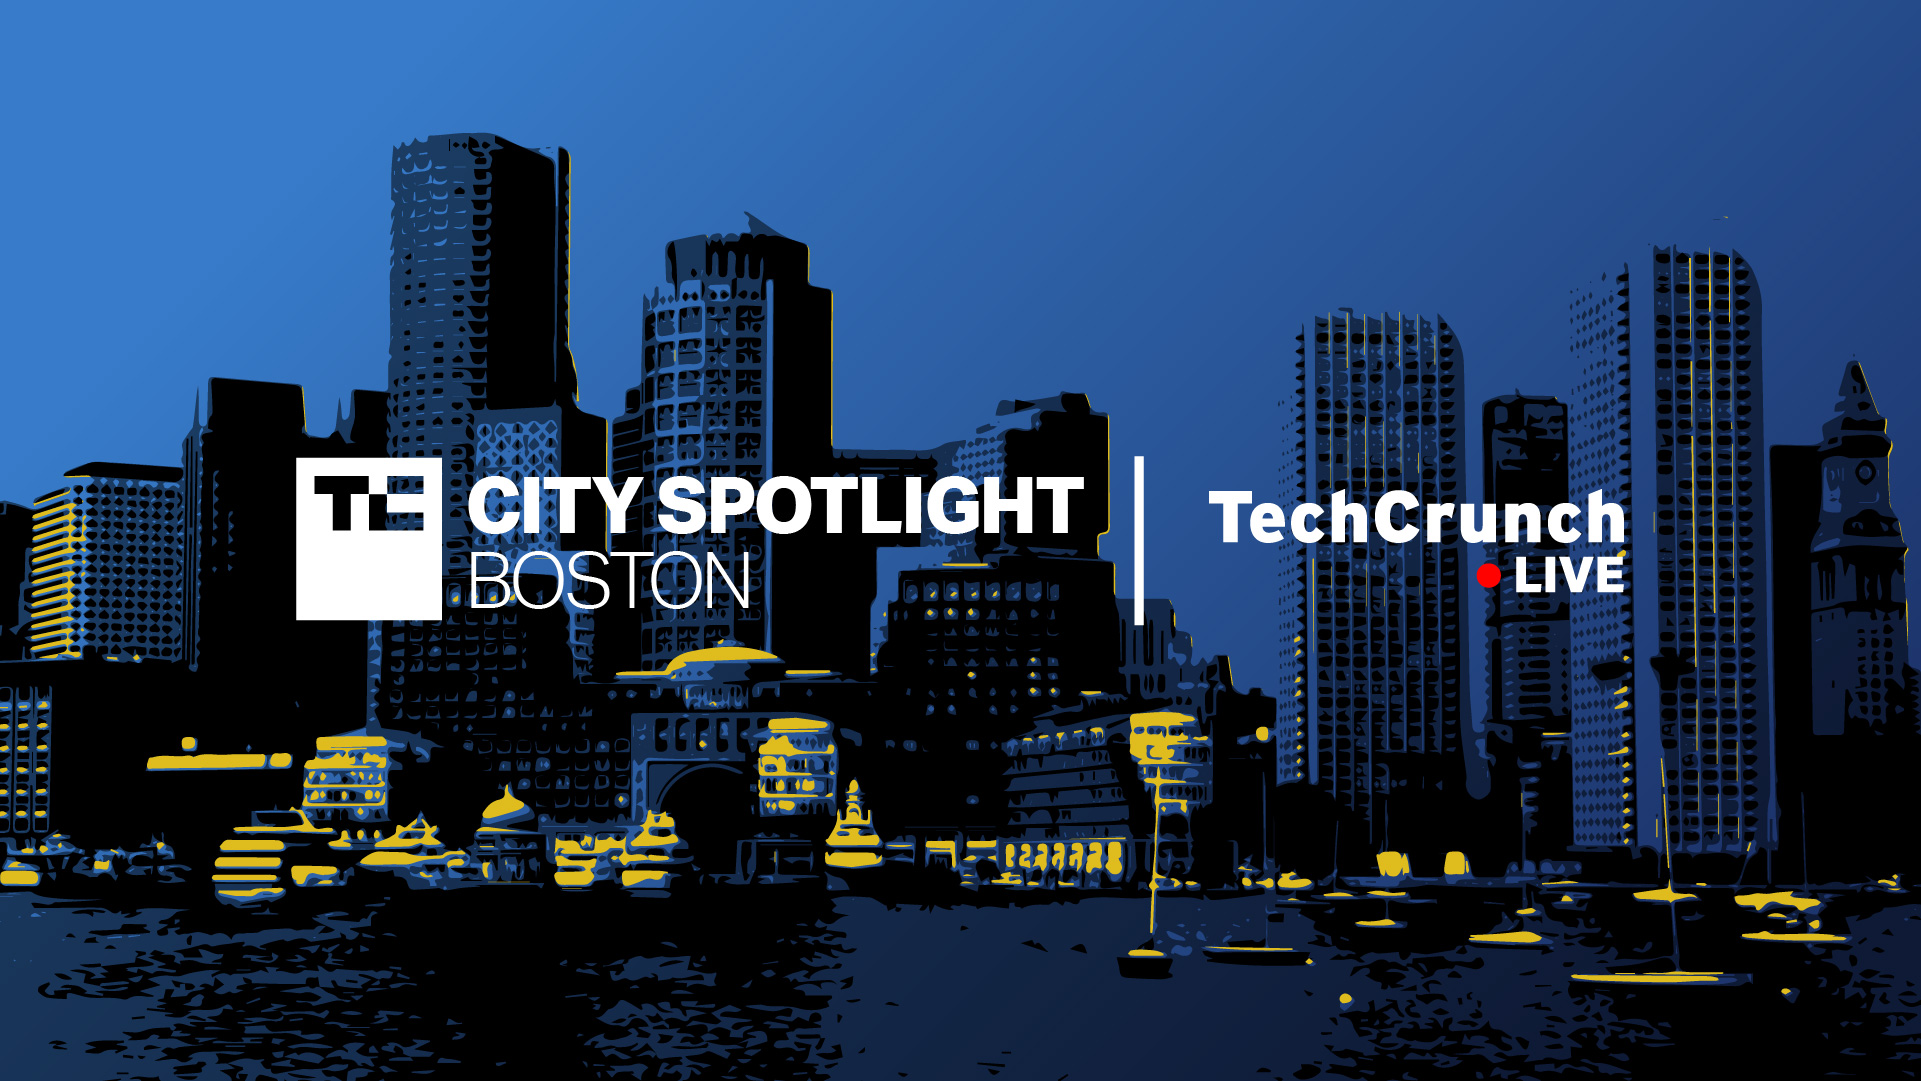 اخبارآخرین تماس برای درخواست شرکت در رویداد (مجازی) TechCrunch در بوستون